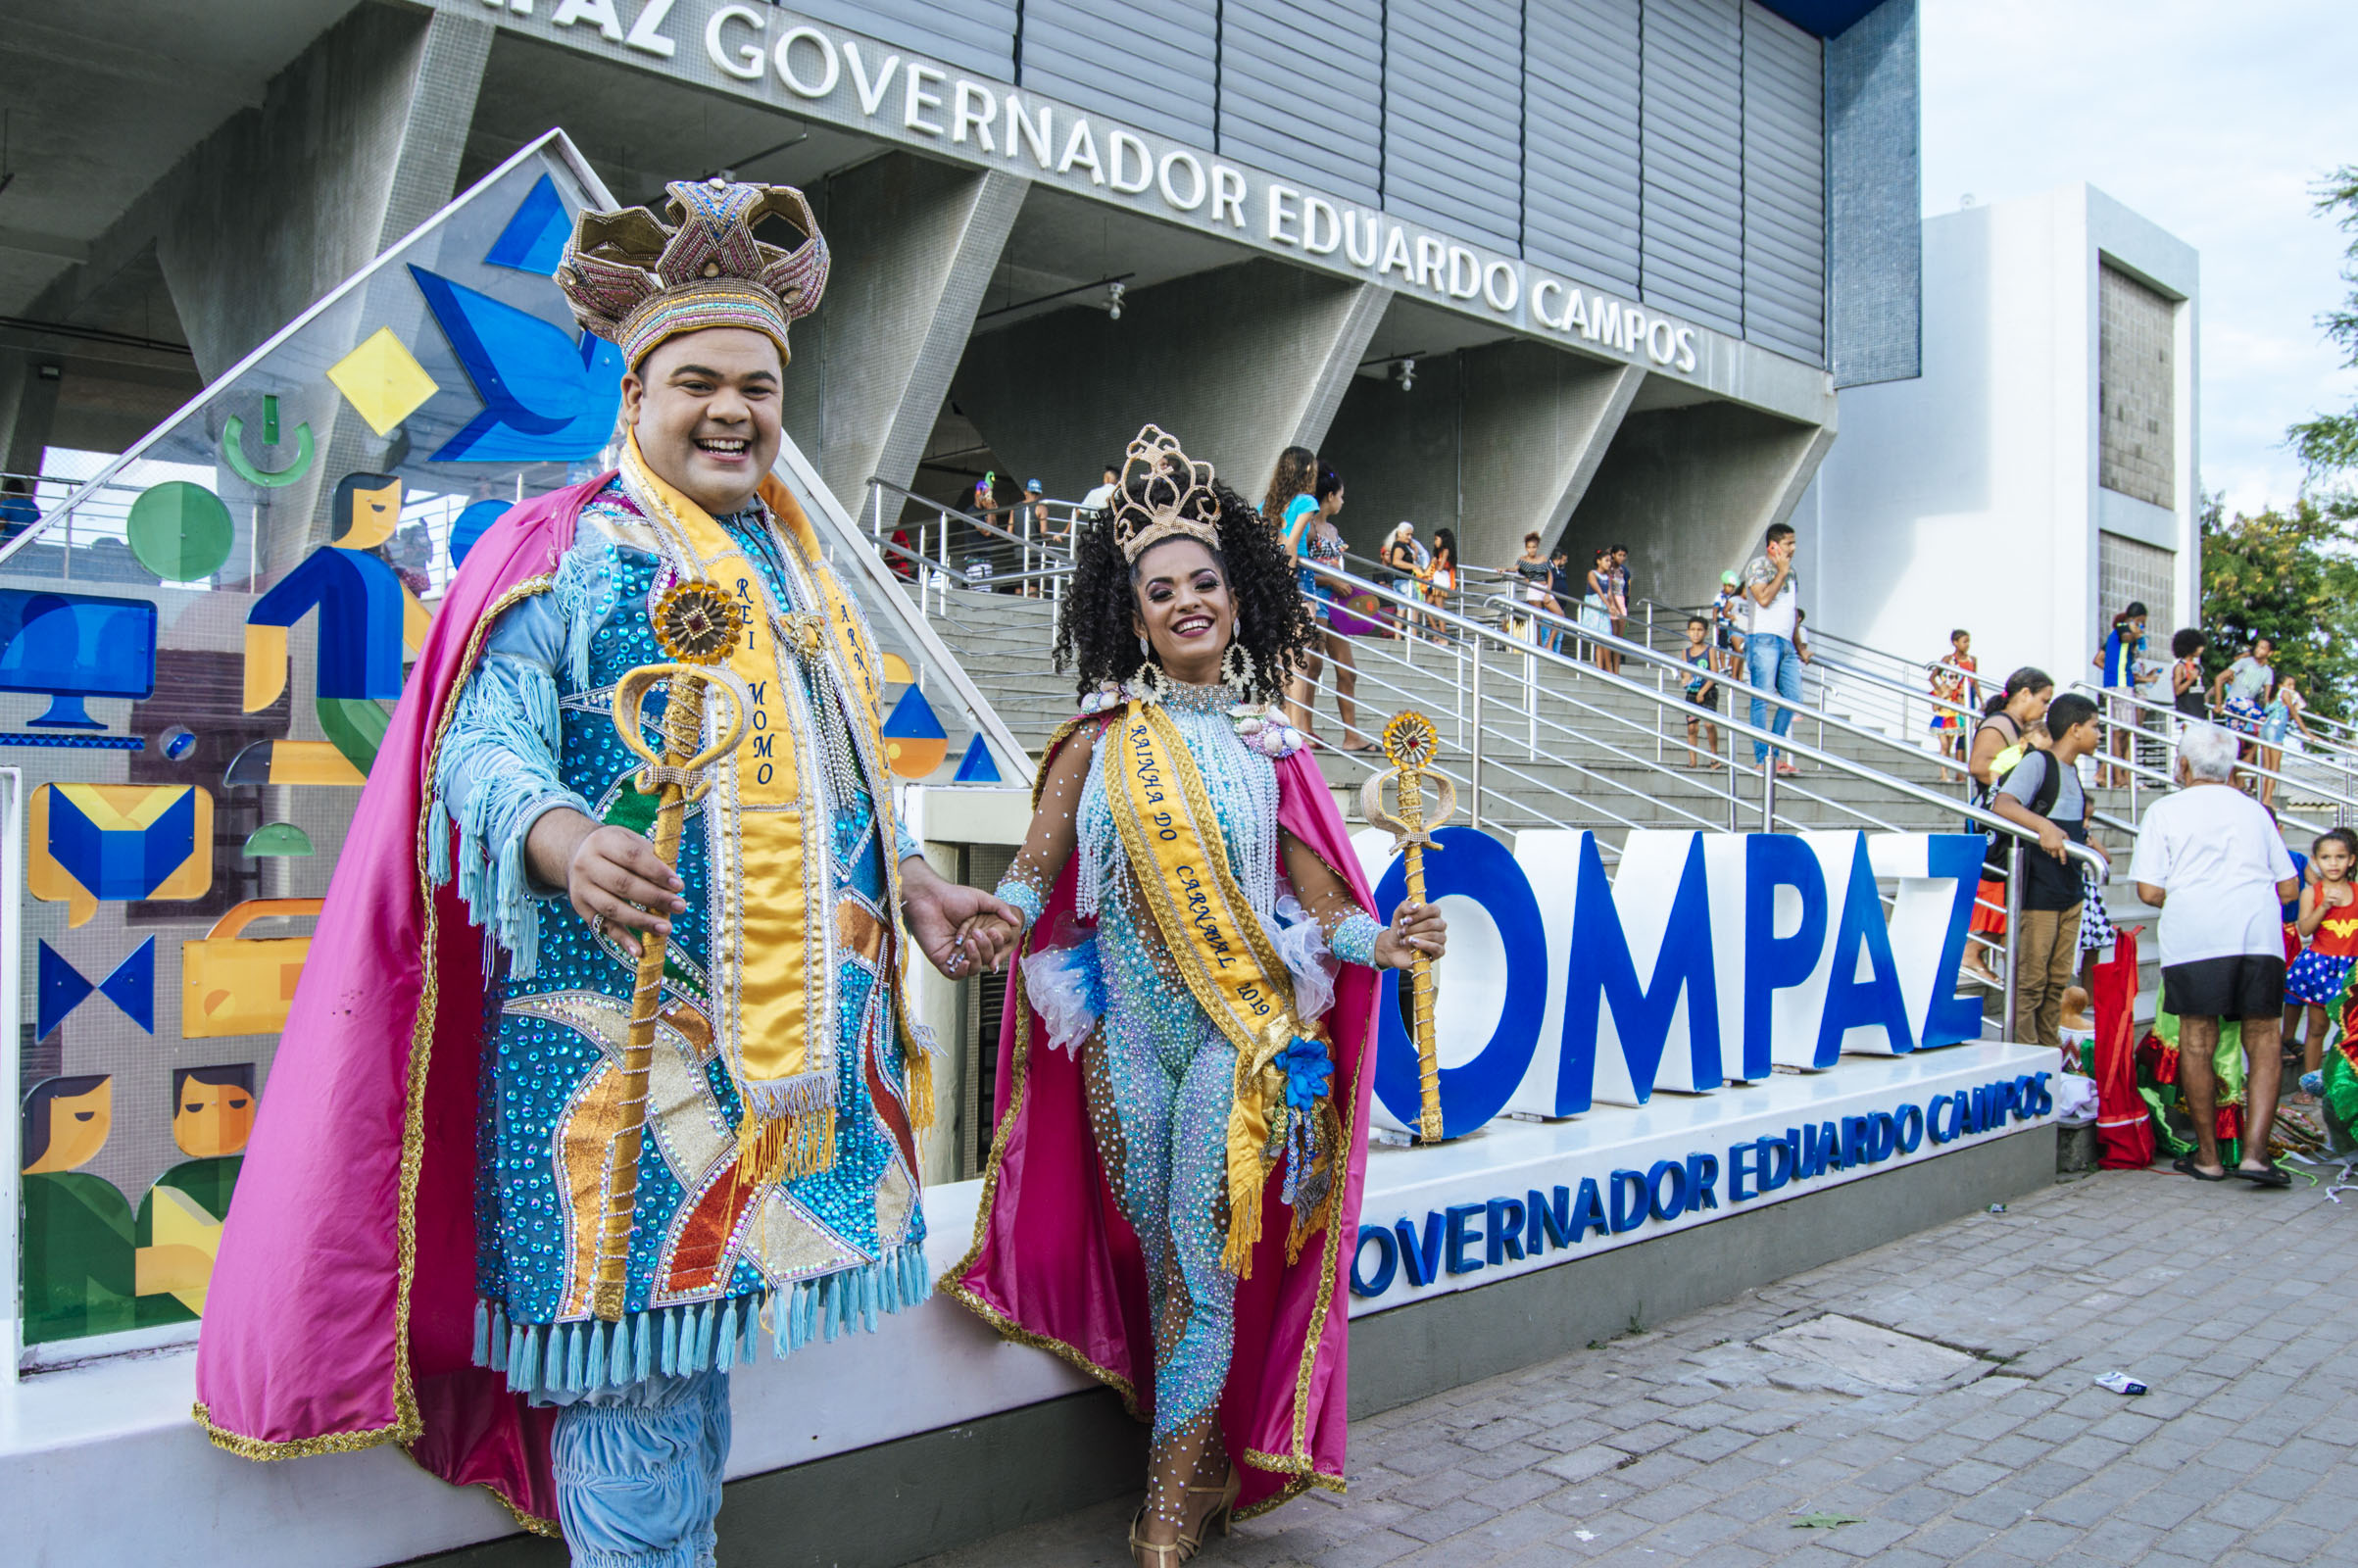 Carnaval 2019 Compaz Eduardo Campos